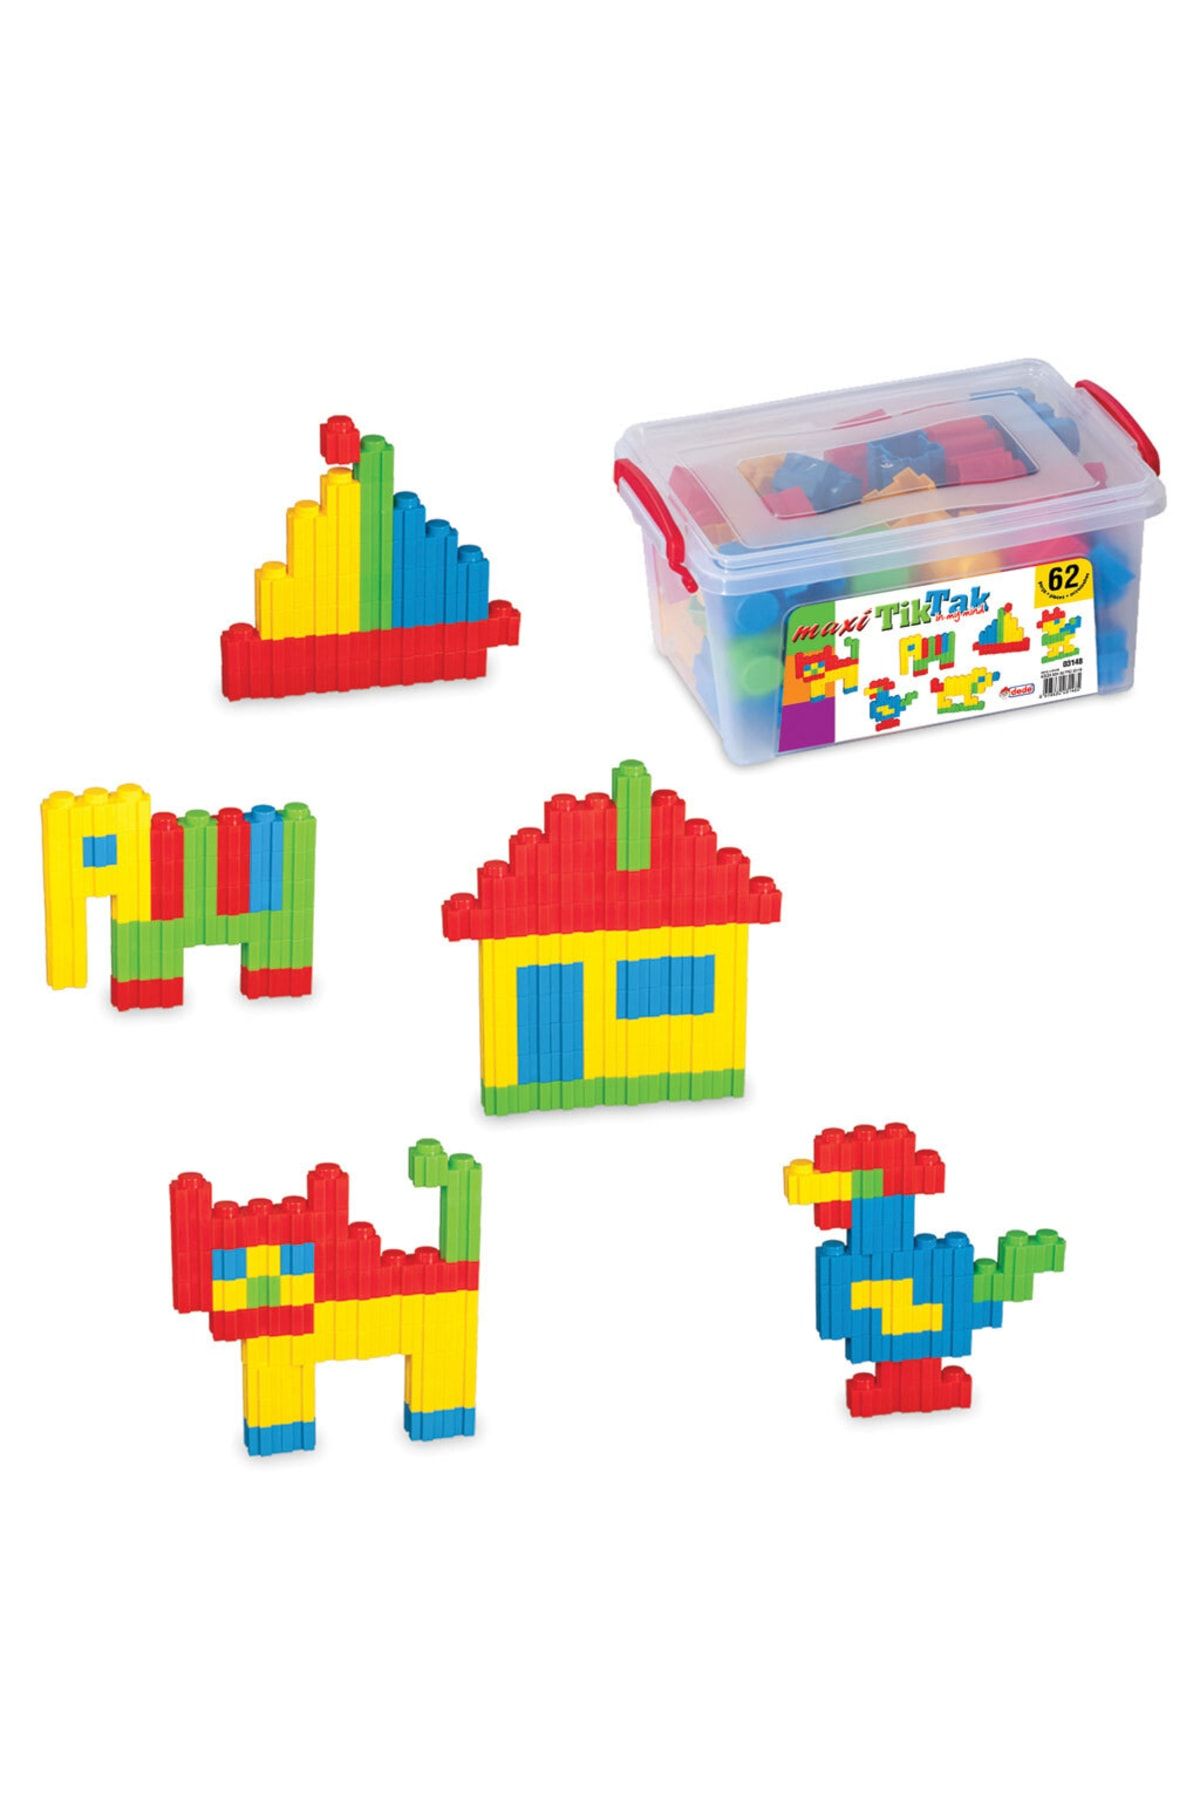 Doğan Oyuncak Dünyası Maxi Tik Tak Lego Küçük (62 Parça) - Lego Oyuncaklar - Yapı Oyuncakları - Tik Tak Puzzle